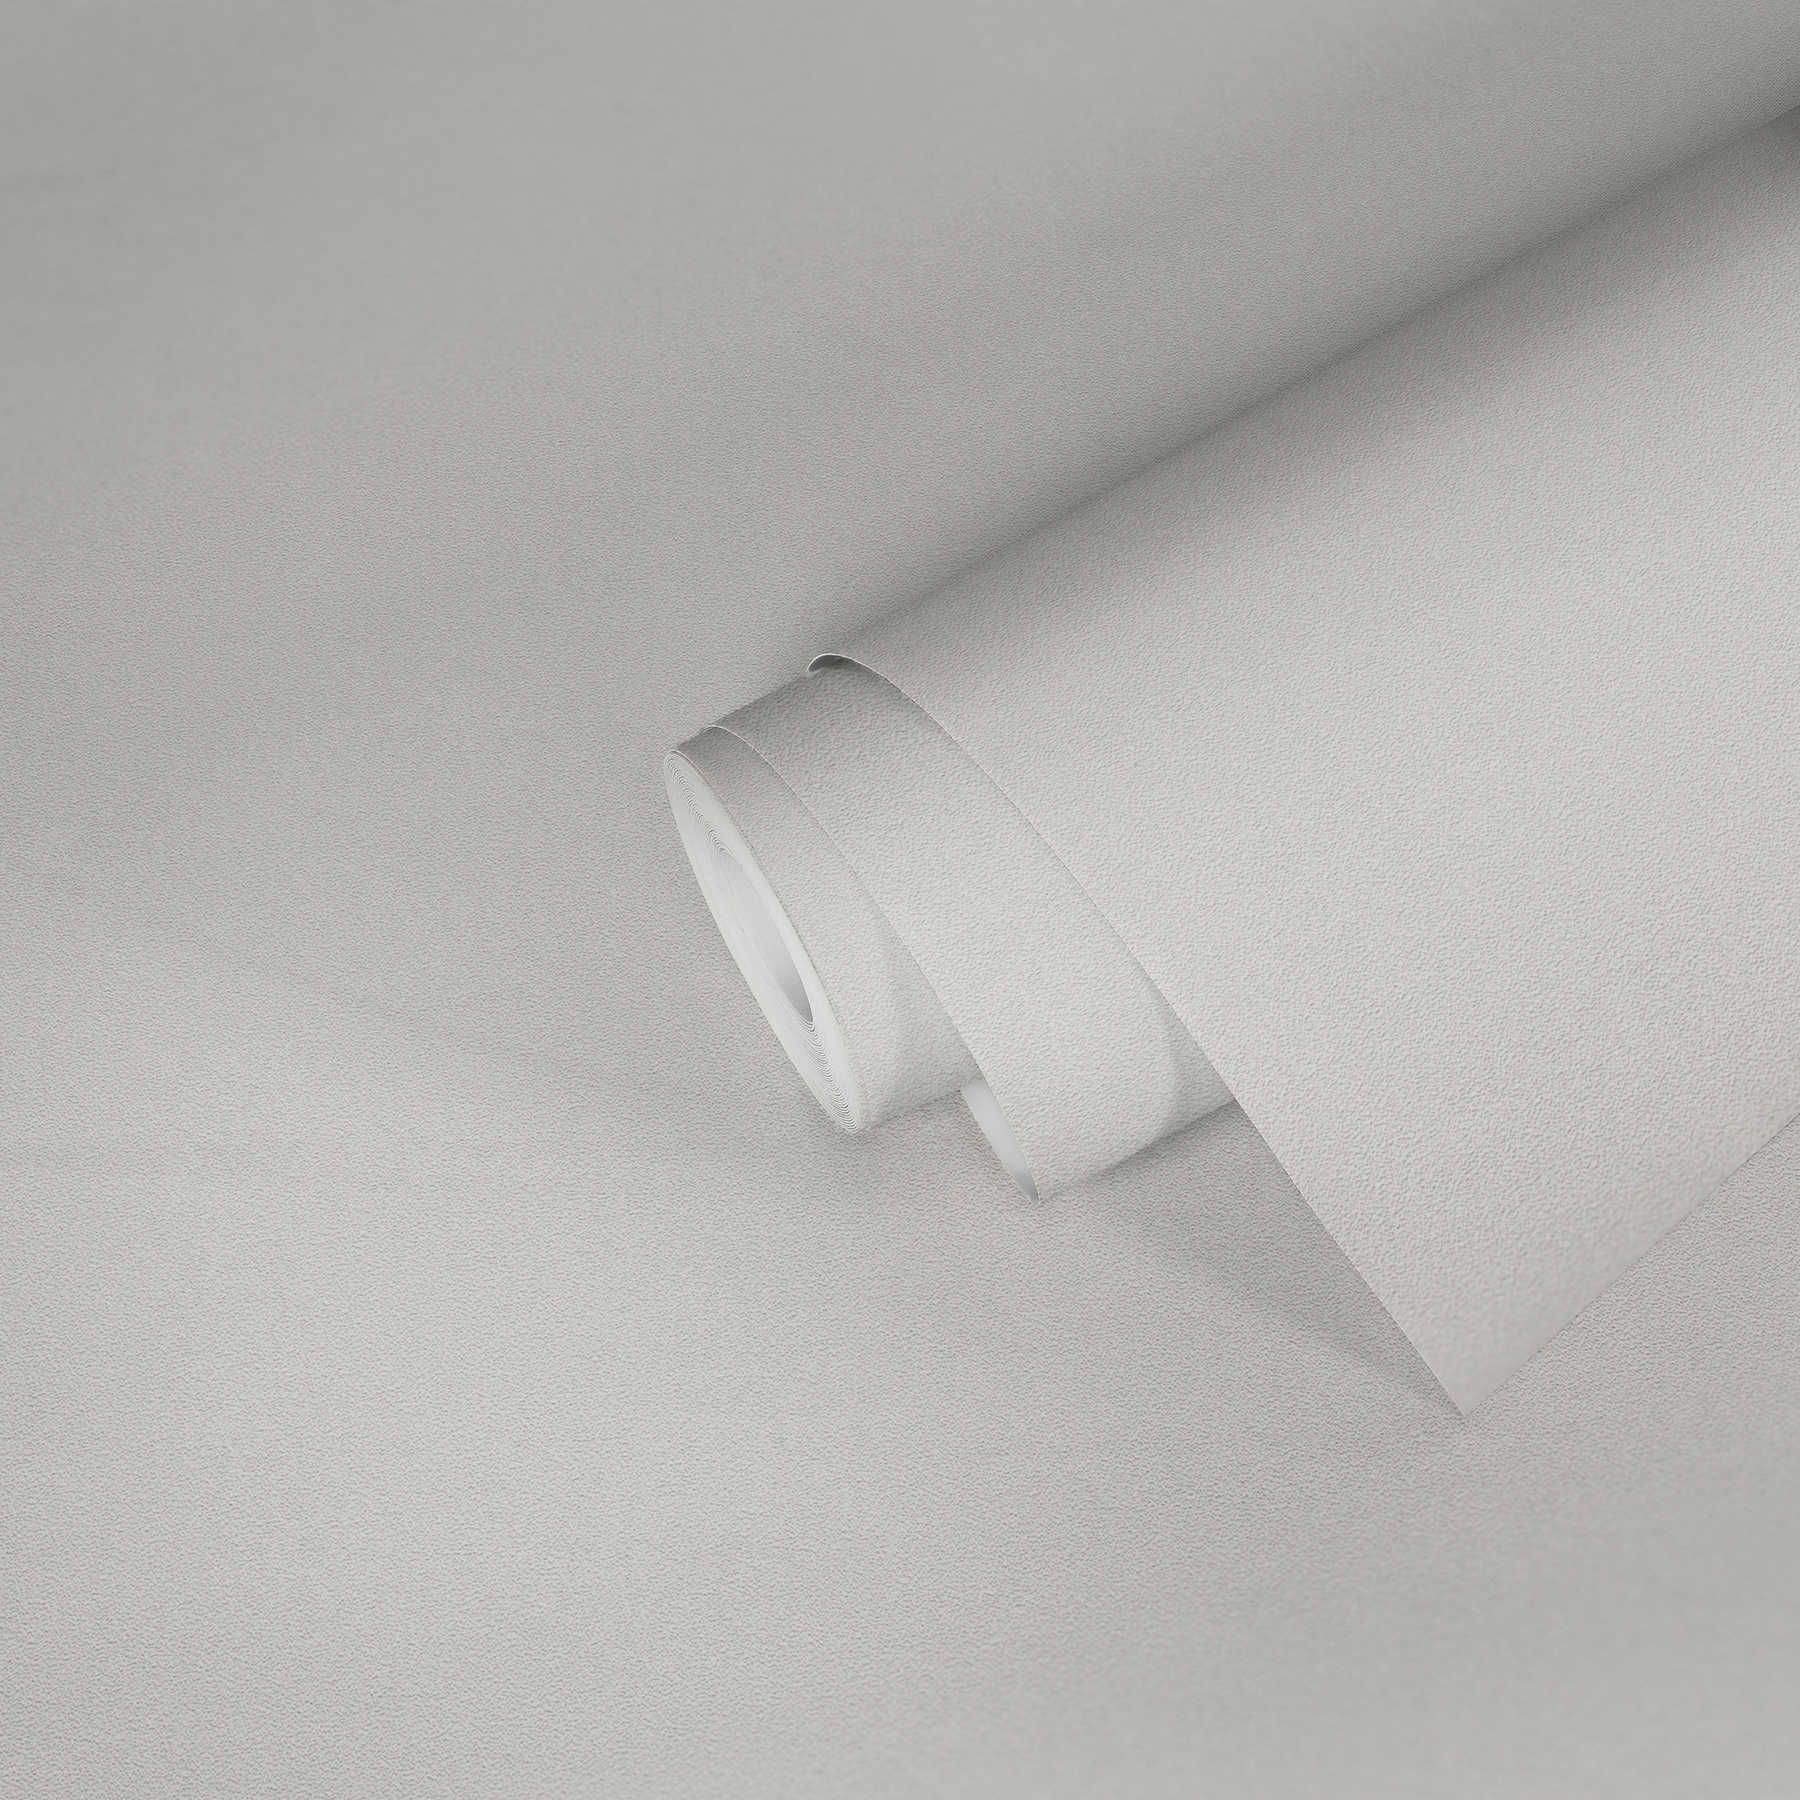             Papier peint intissé neutre uni, clair & lisse - Blanc
        